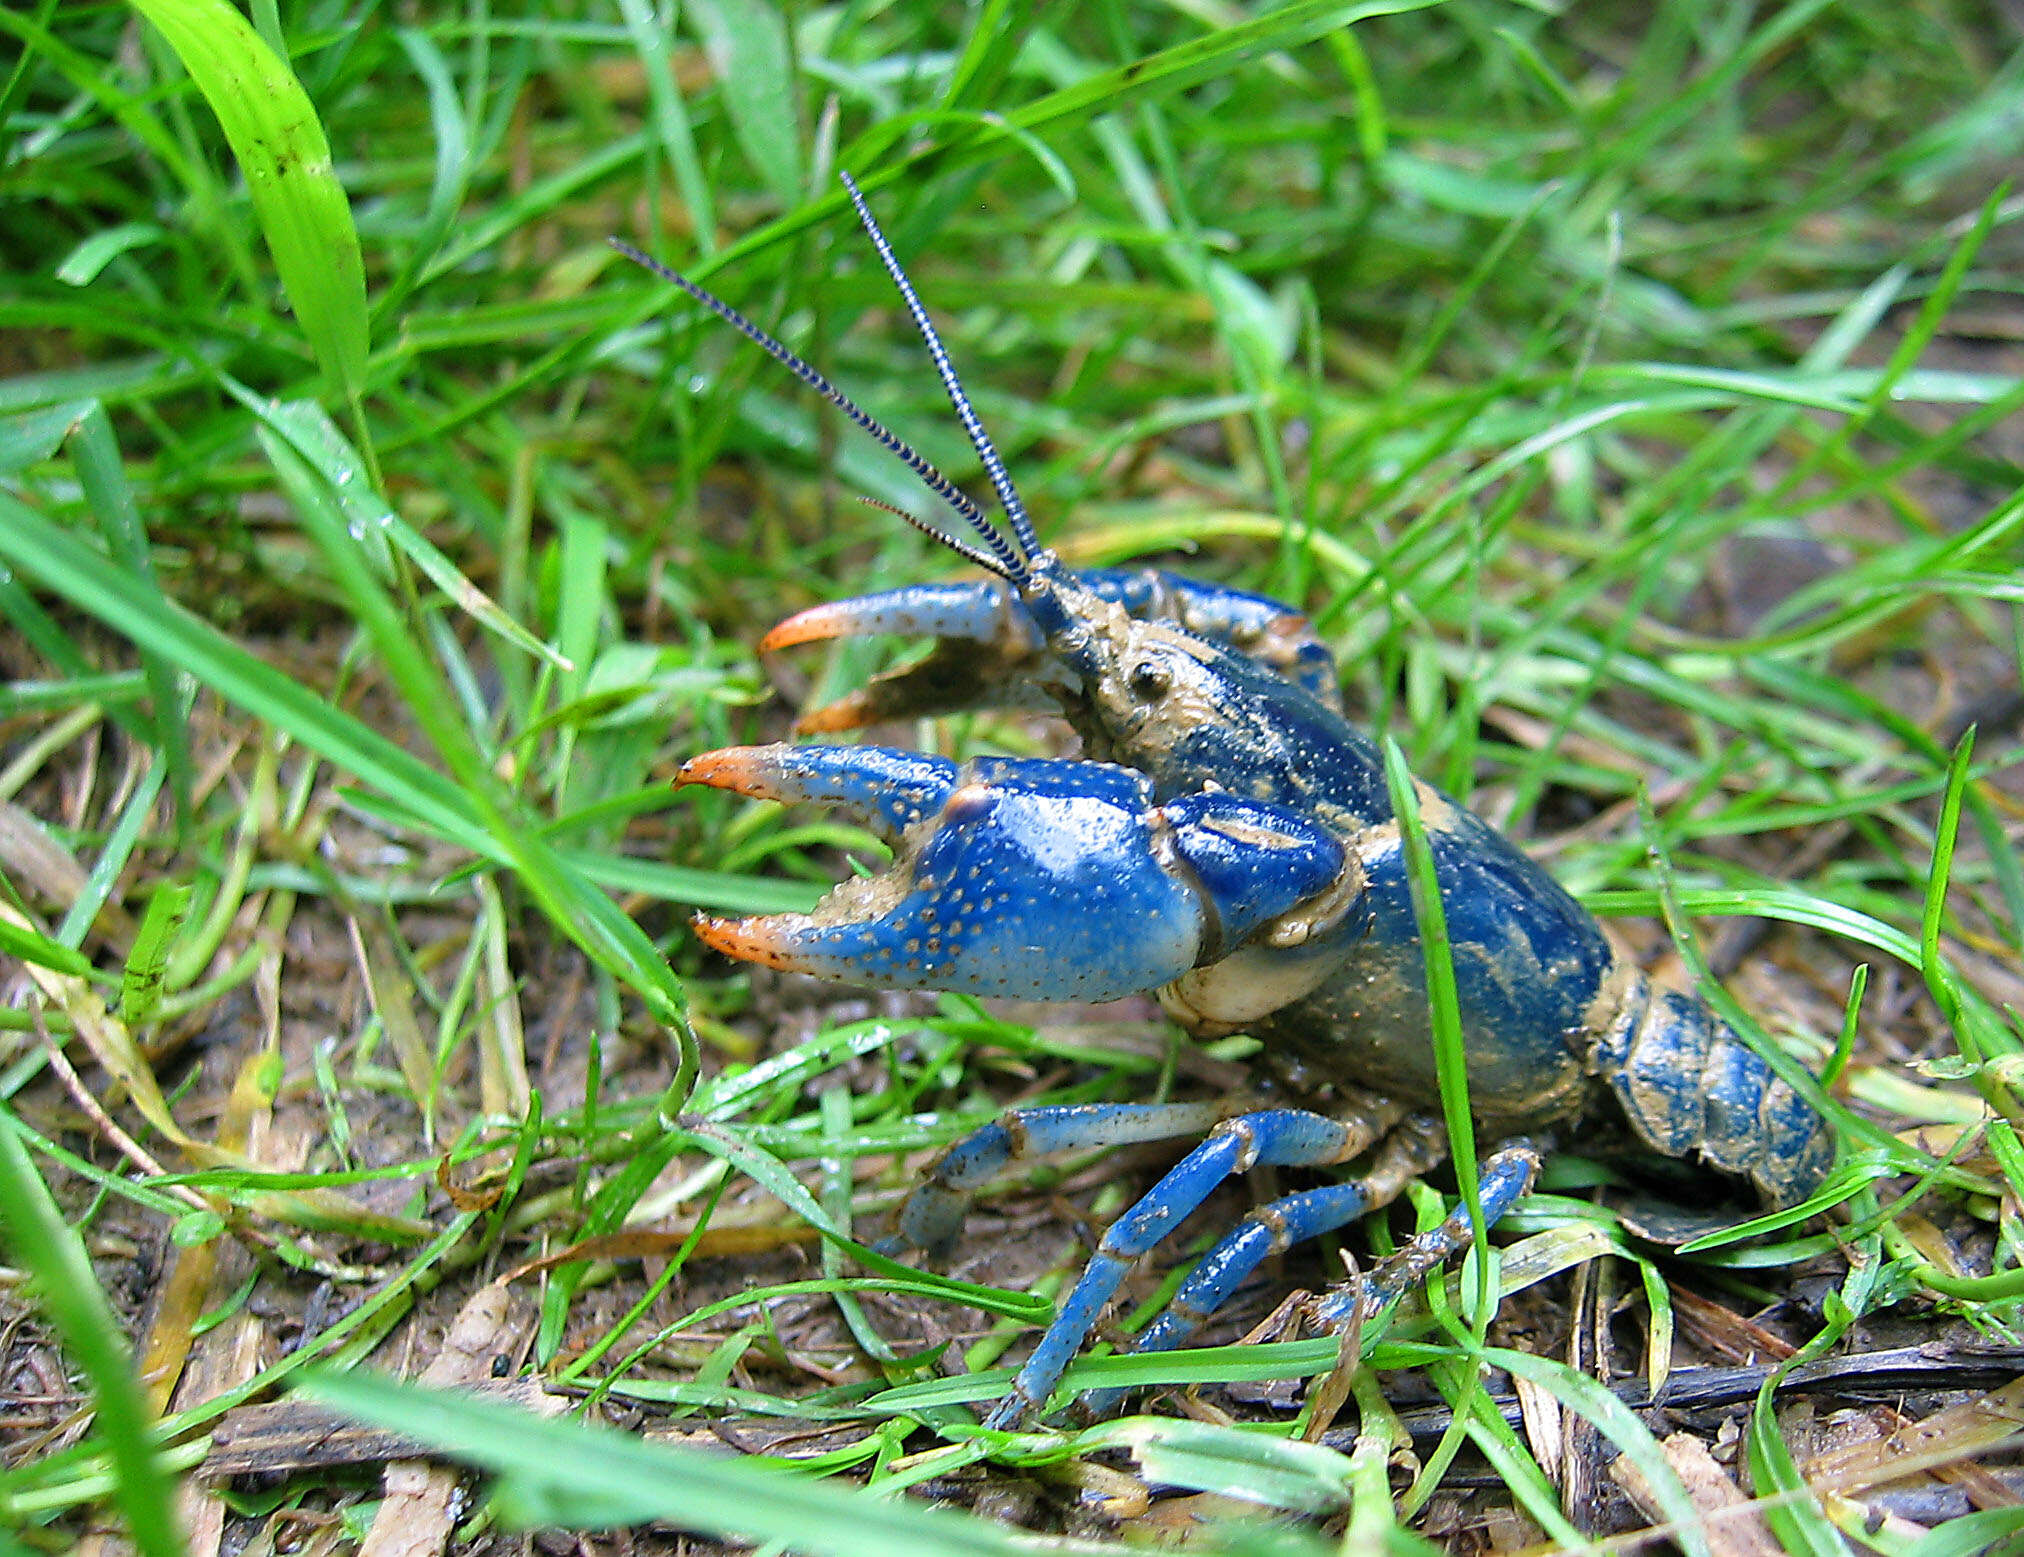 Image of Blue Crayfish